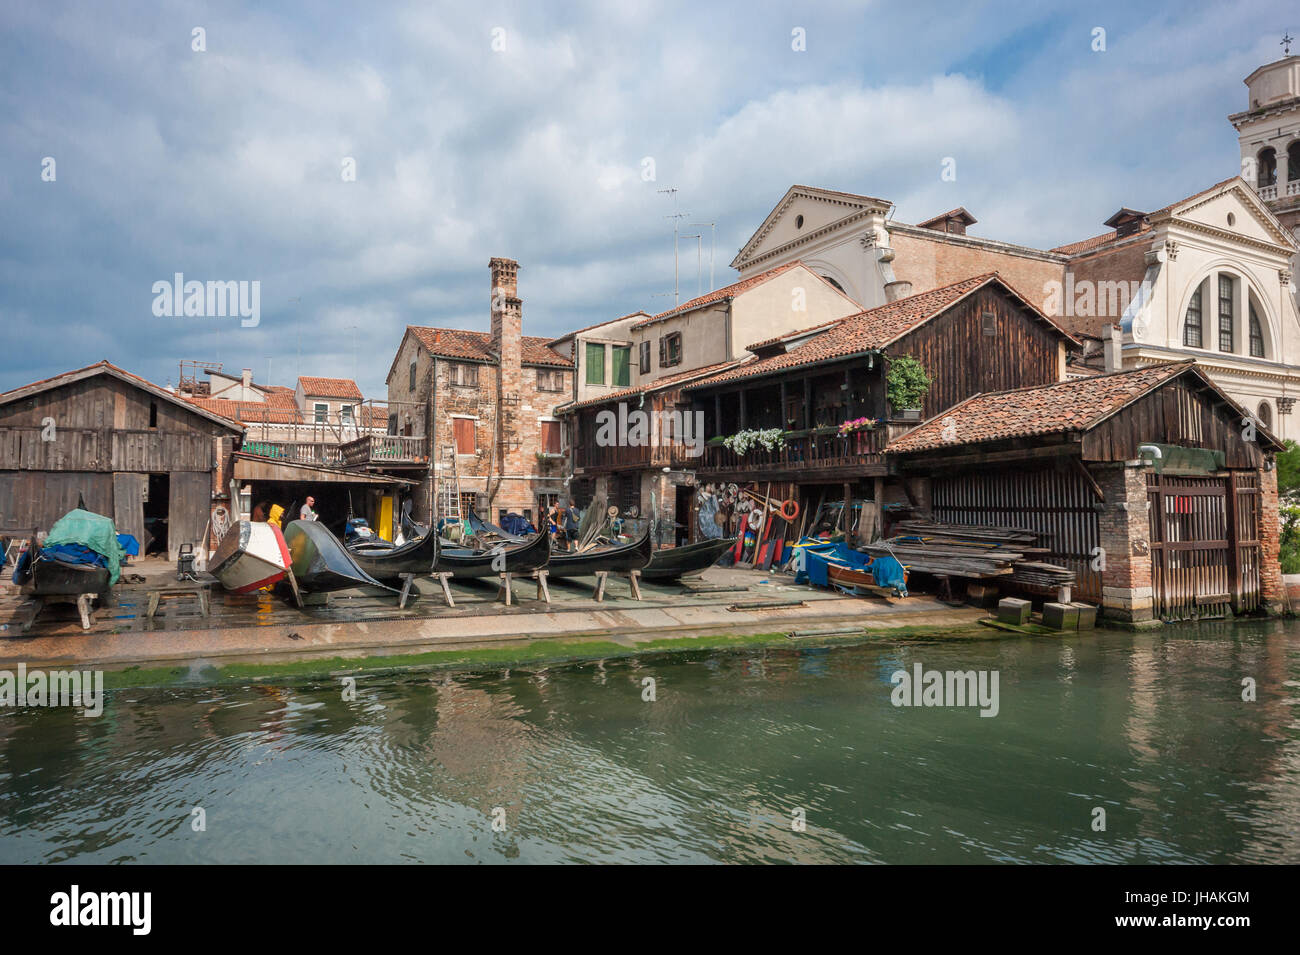 Du vrai Venise, Italie : un des derniers bateau gondole construire et réparer shipyard - atelier sur un canal dans le quartier de Dorsoduro Banque D'Images